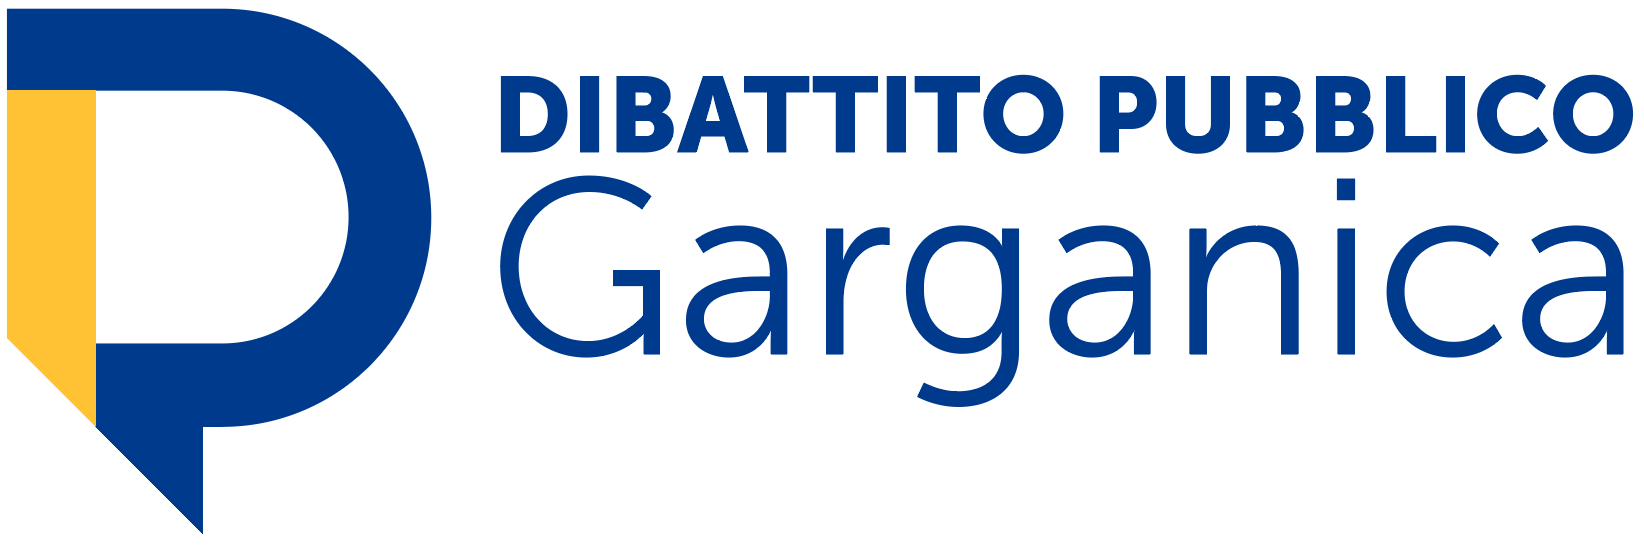 Dibattito pubblico potenziamento collegamento stradale tra Vico del Gargano e Mattinata